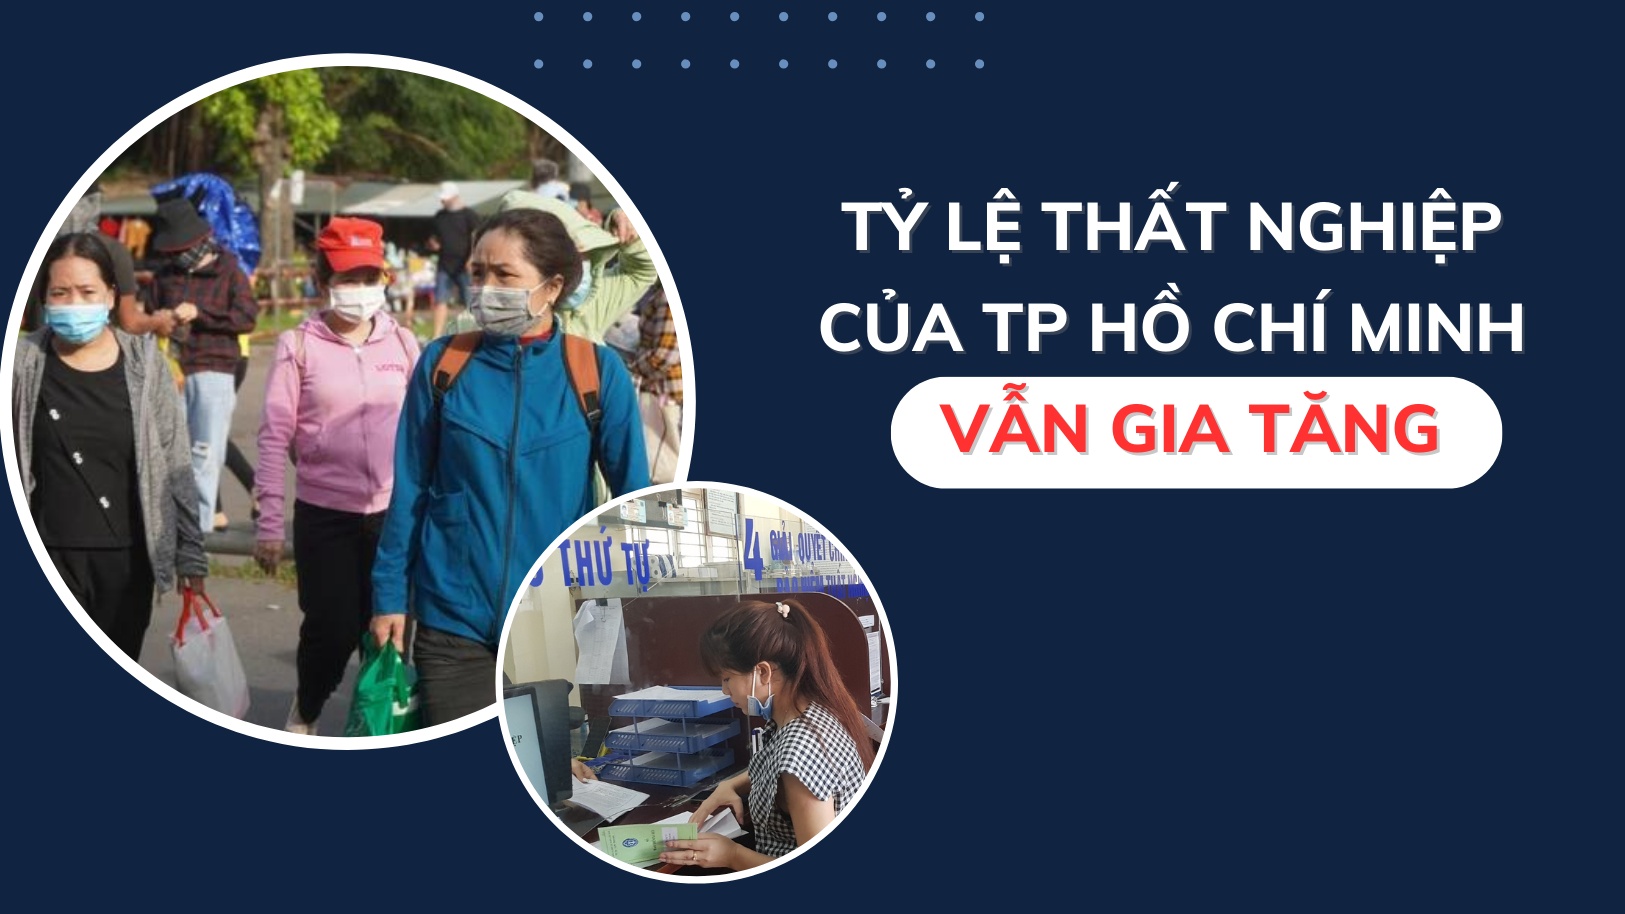 Tỷ lệ thất nghiệp của TP Hồ Chí Minh vẫn gia tăng